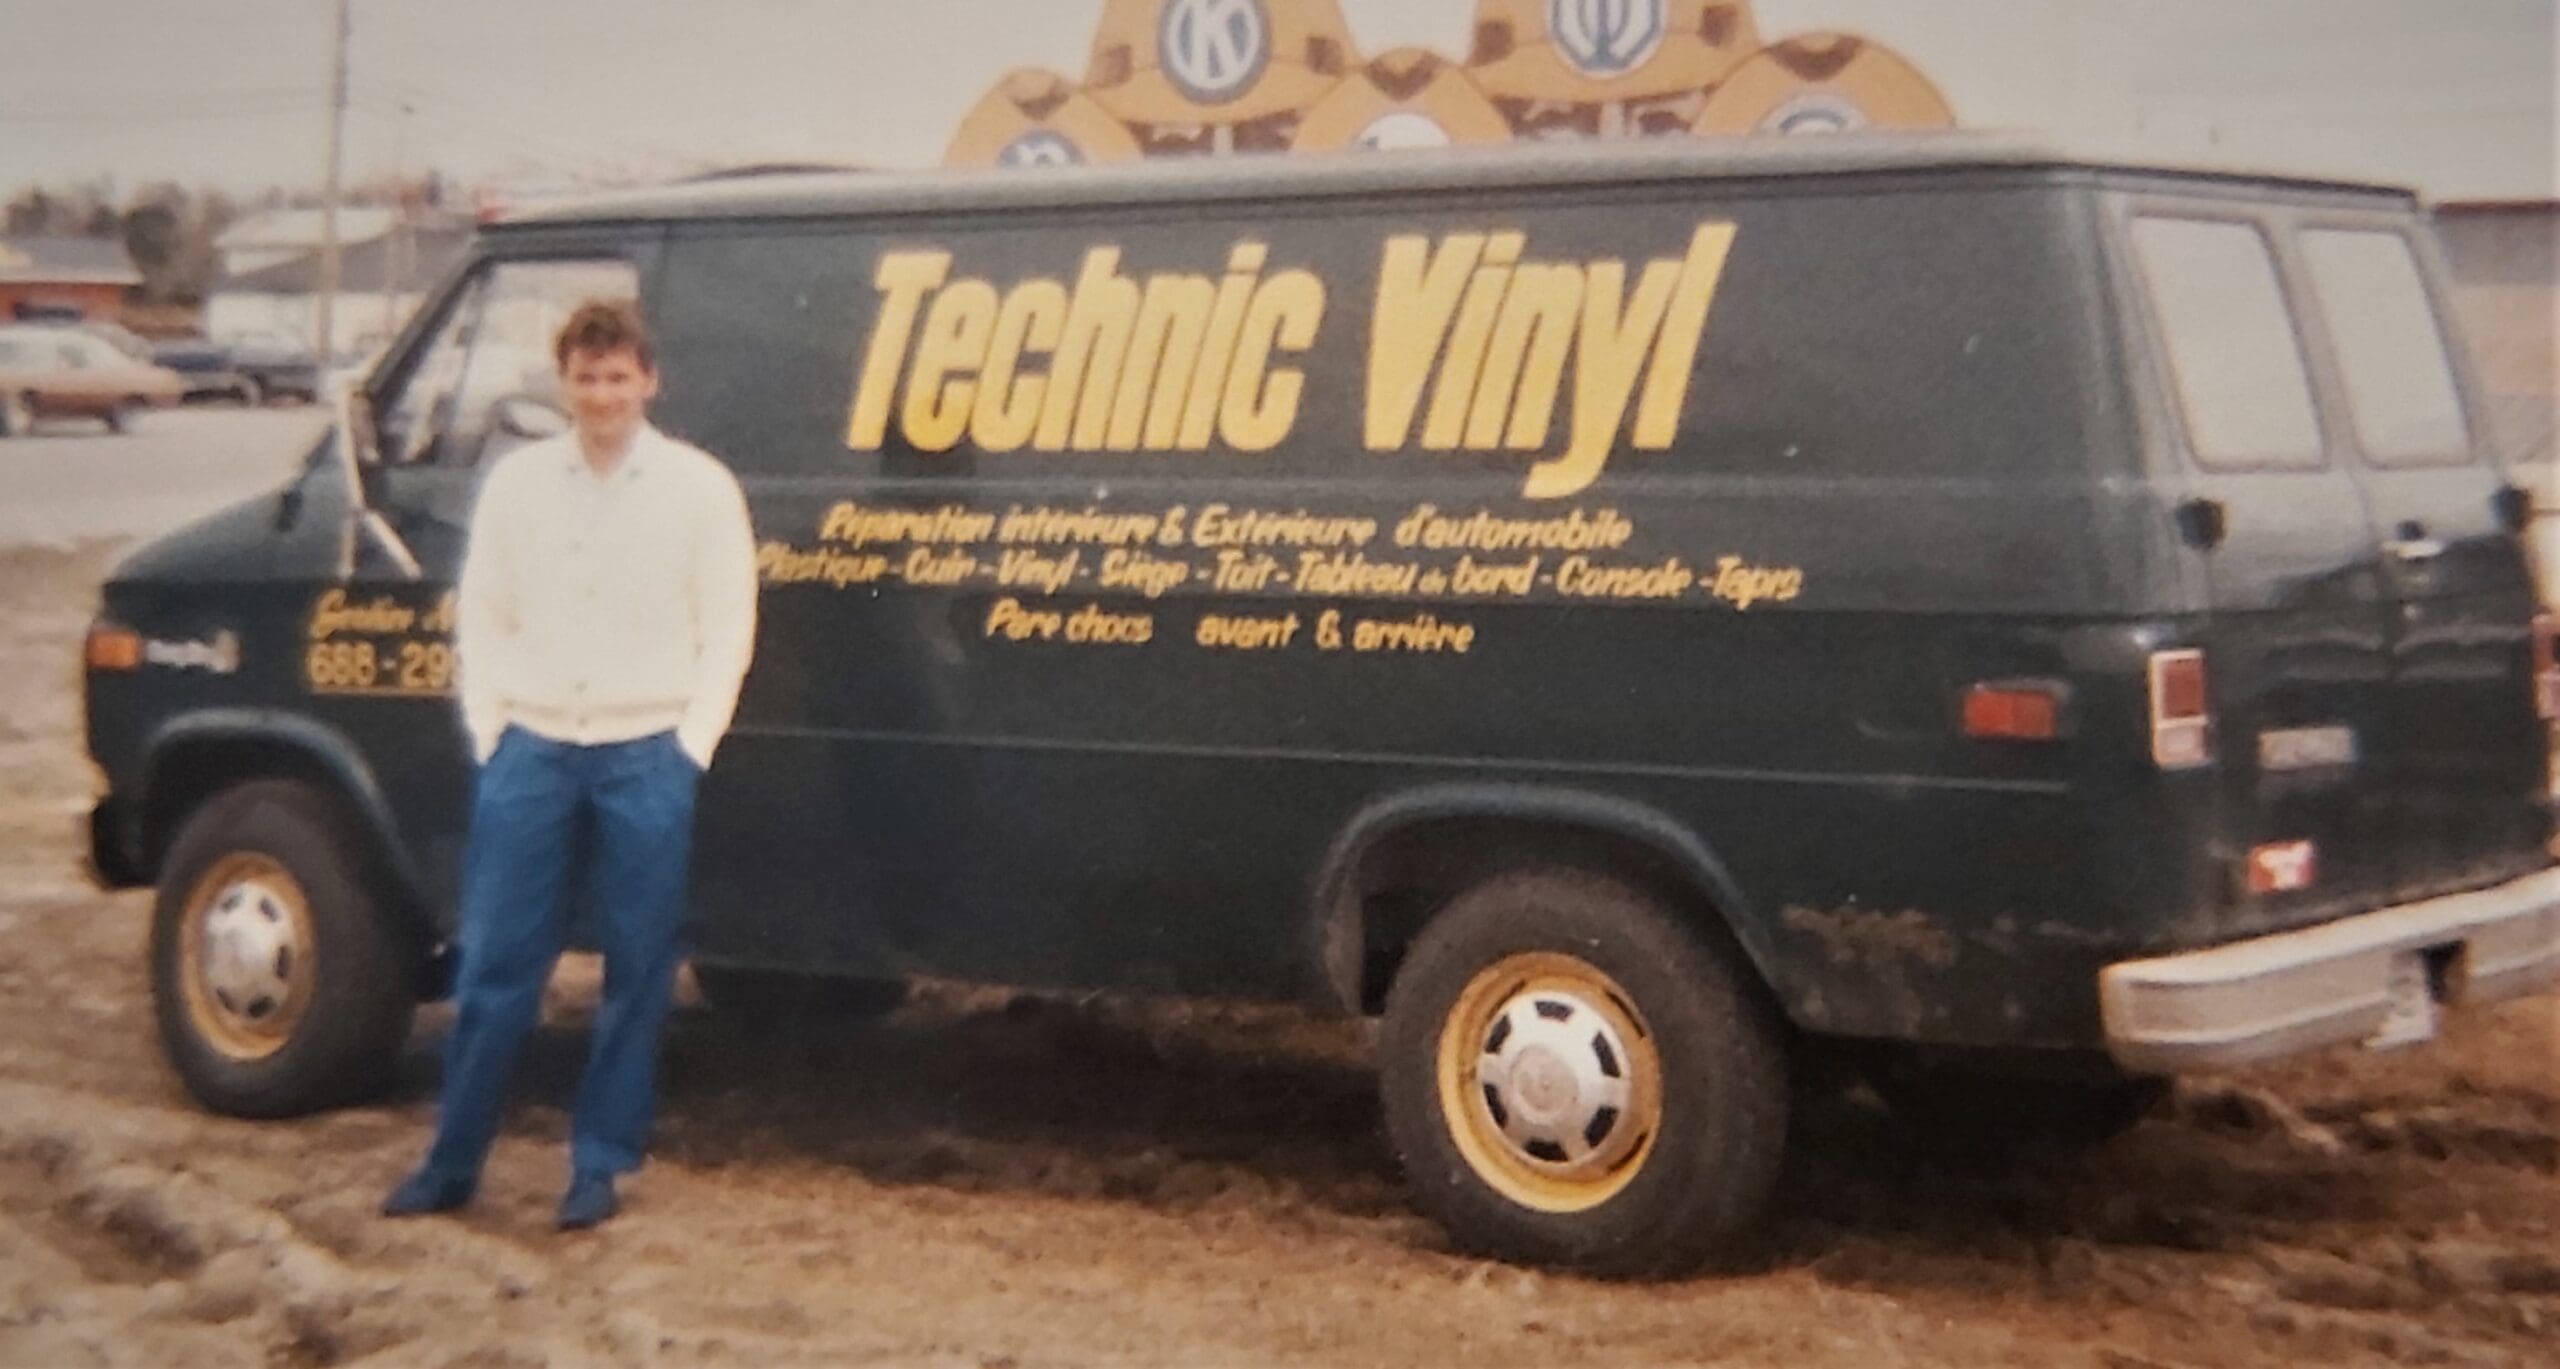 Serge Béliveau fondateur technic vinyl